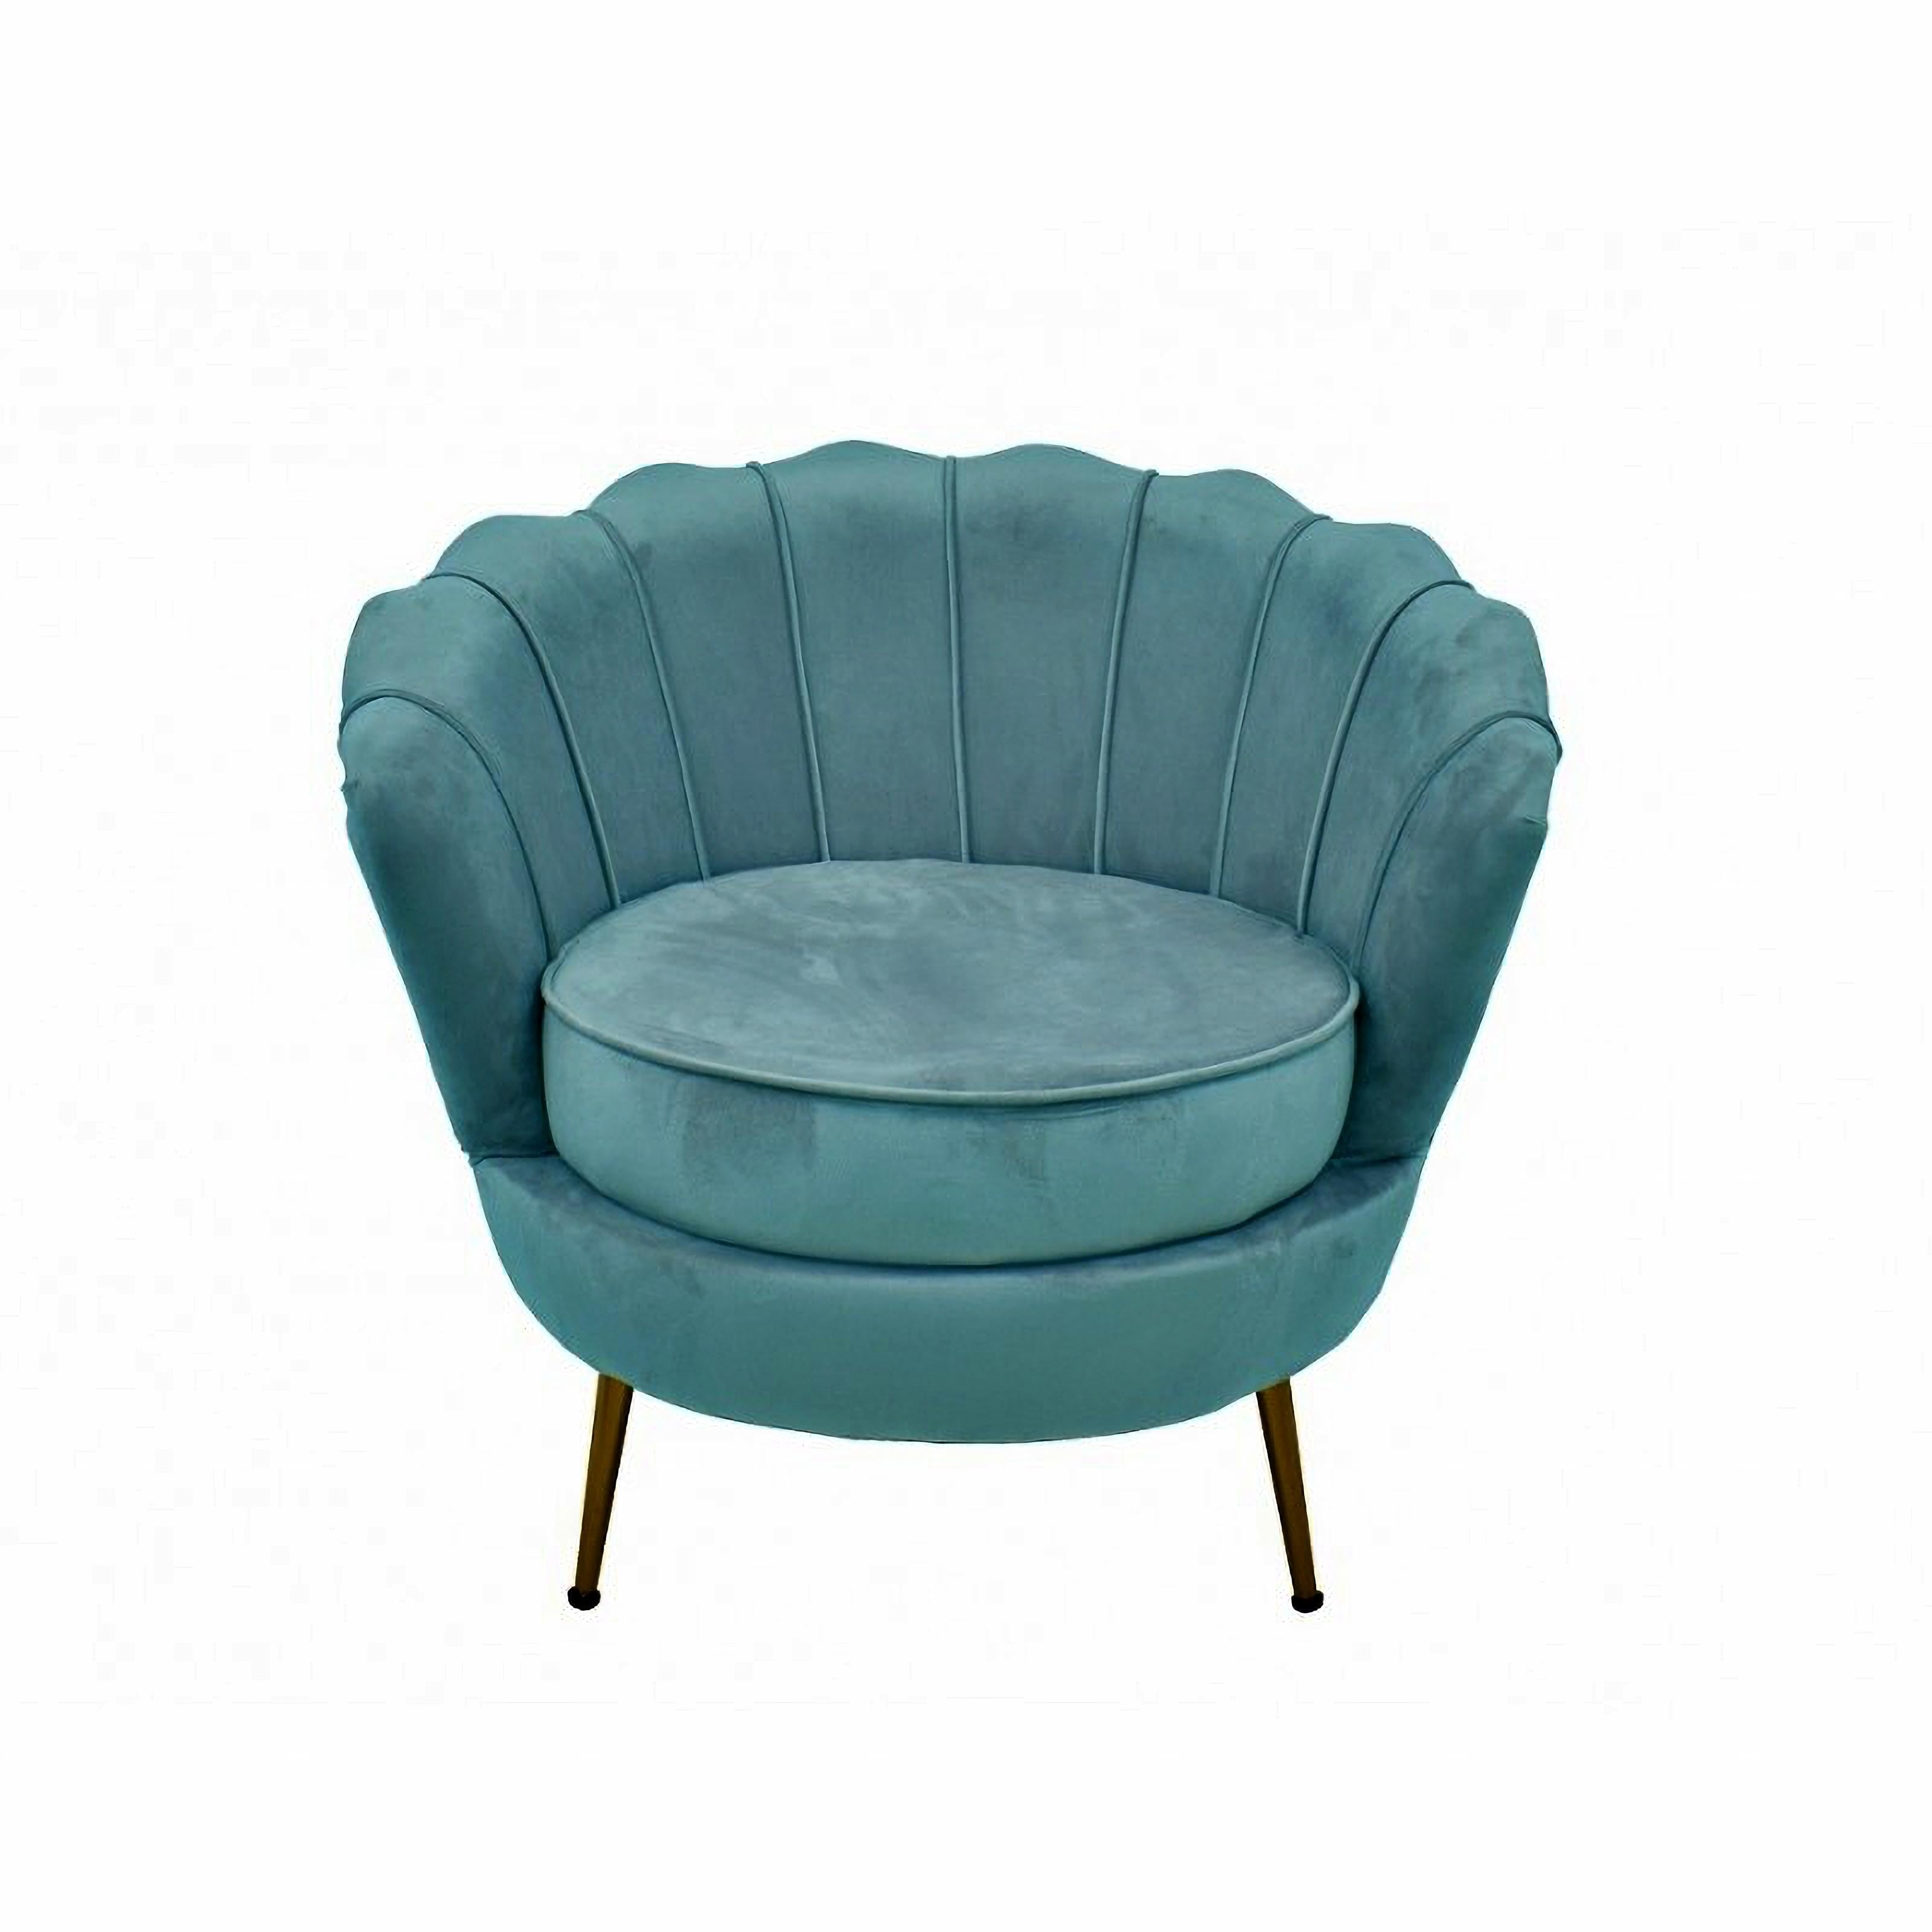 Spanish Pair Armchair Turquoise Velvet Upholstered New For Sale